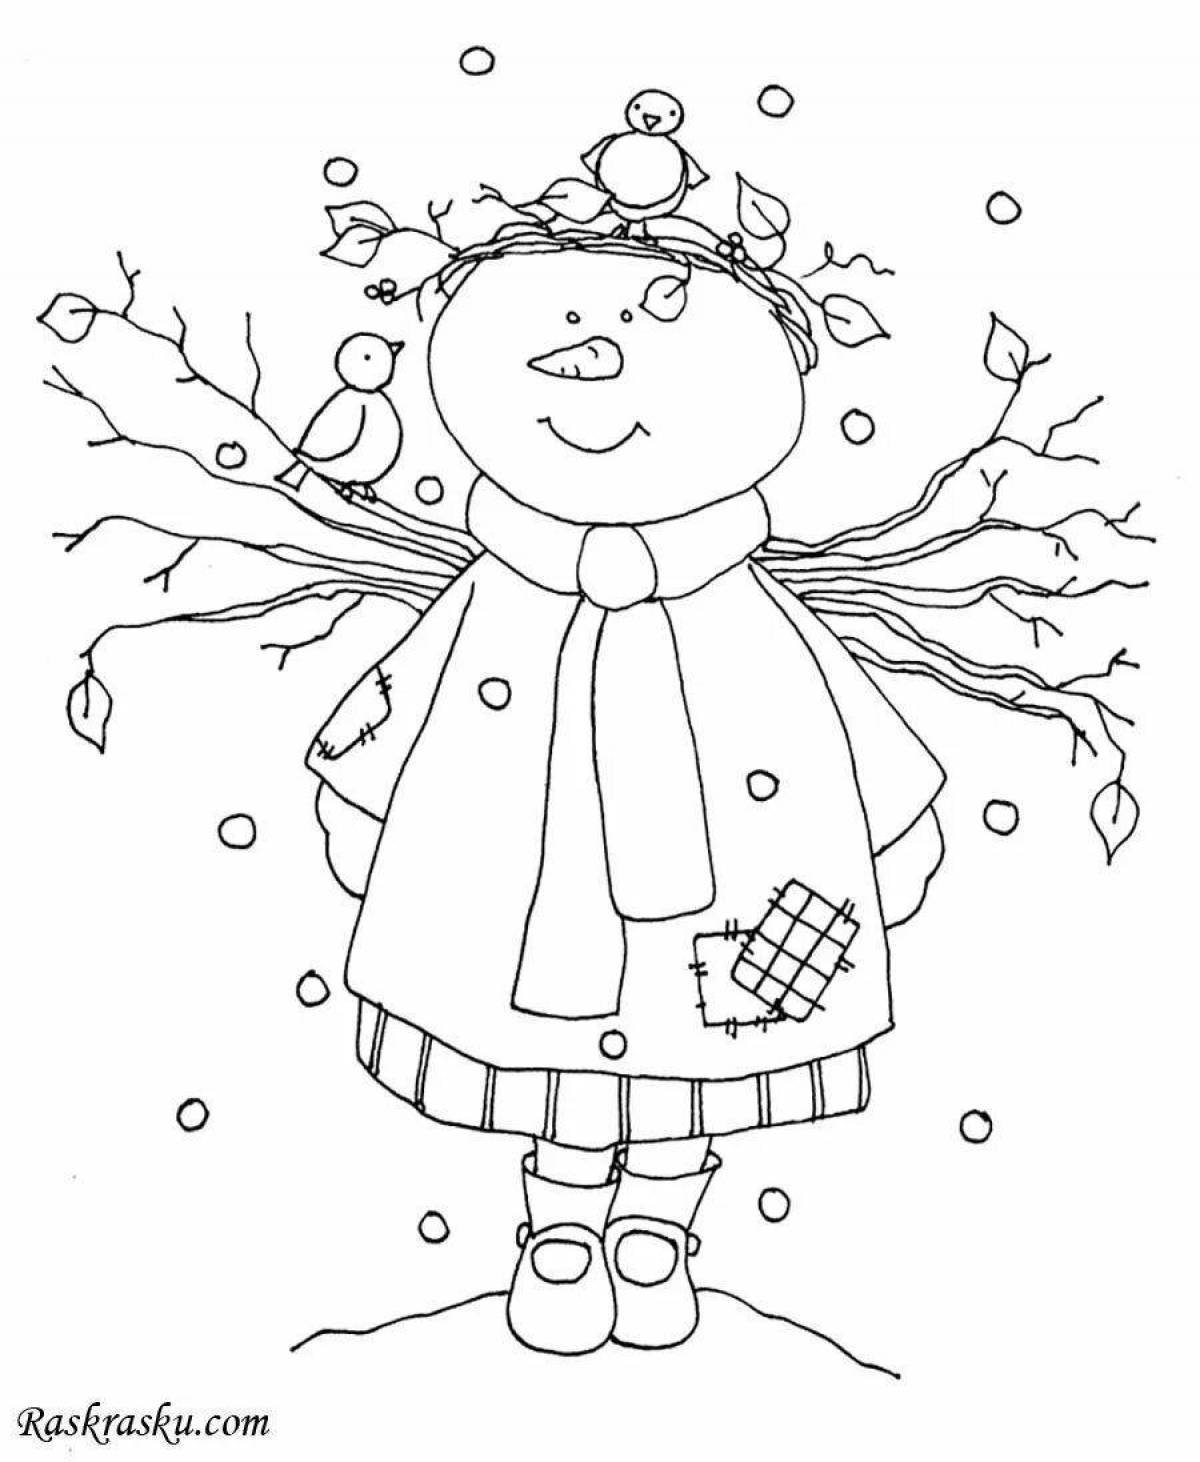 Adorable snowman girl coloring book